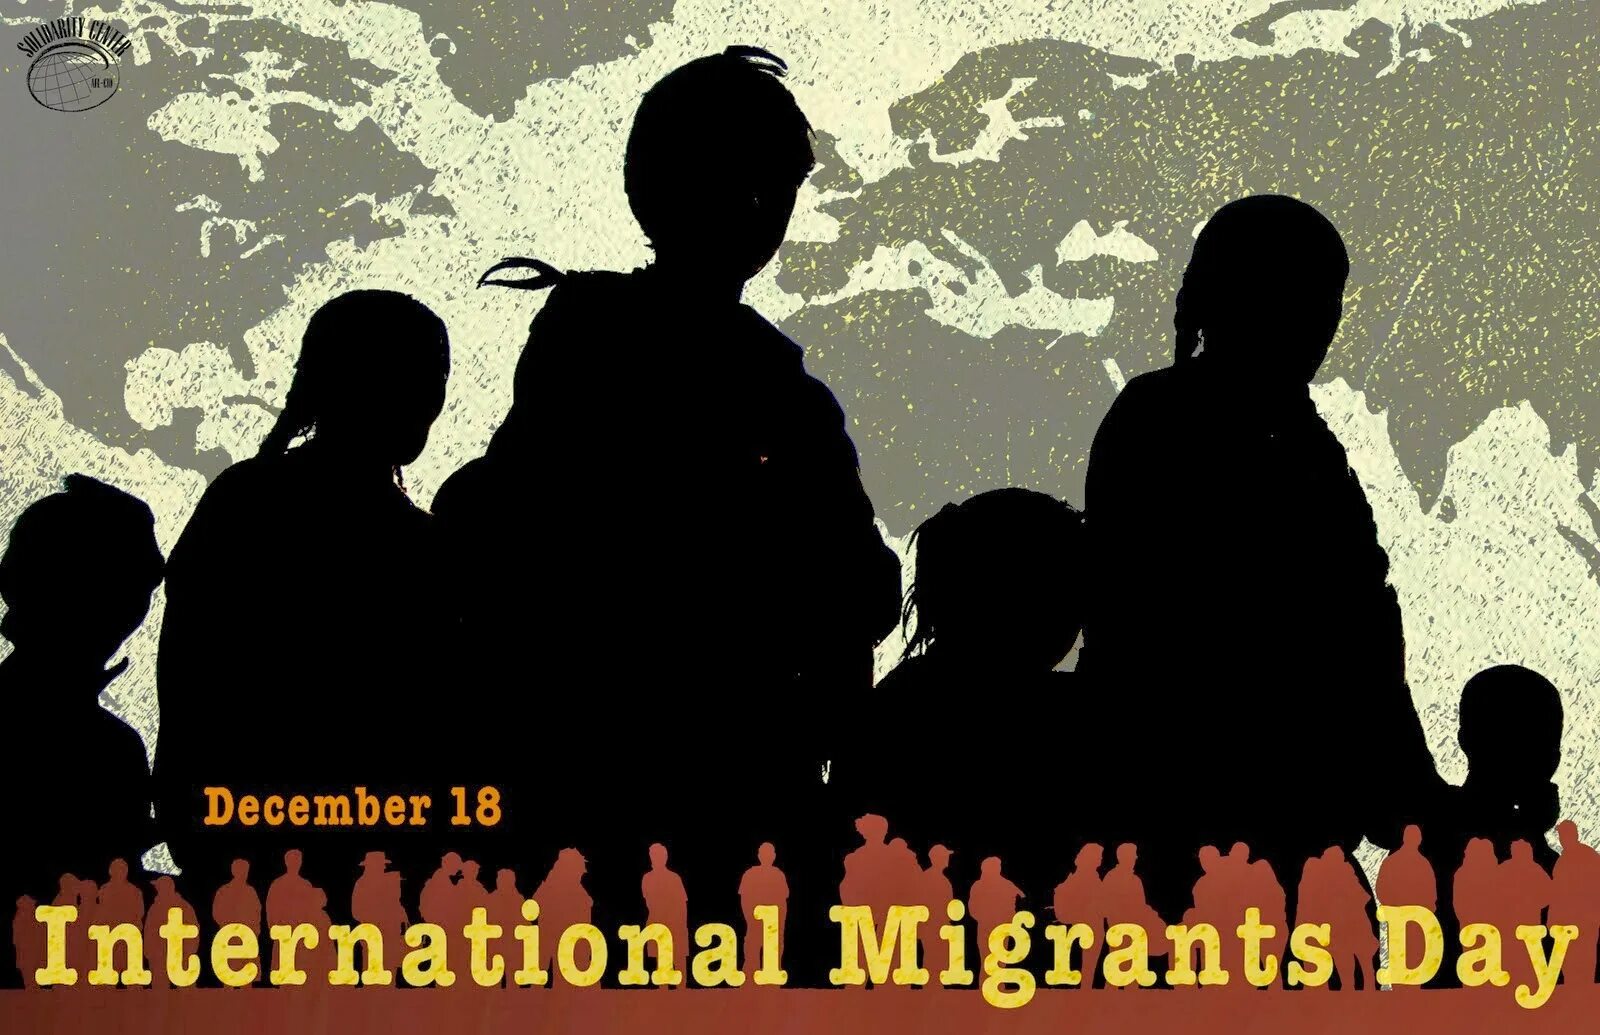 Конвенция о защите прав всех трудящихся. Международный день мигранта. Международный день мигранта 18 декабря. Конвенция о защите прав трудящихся мигрантов. Мигранты иллюстрация.